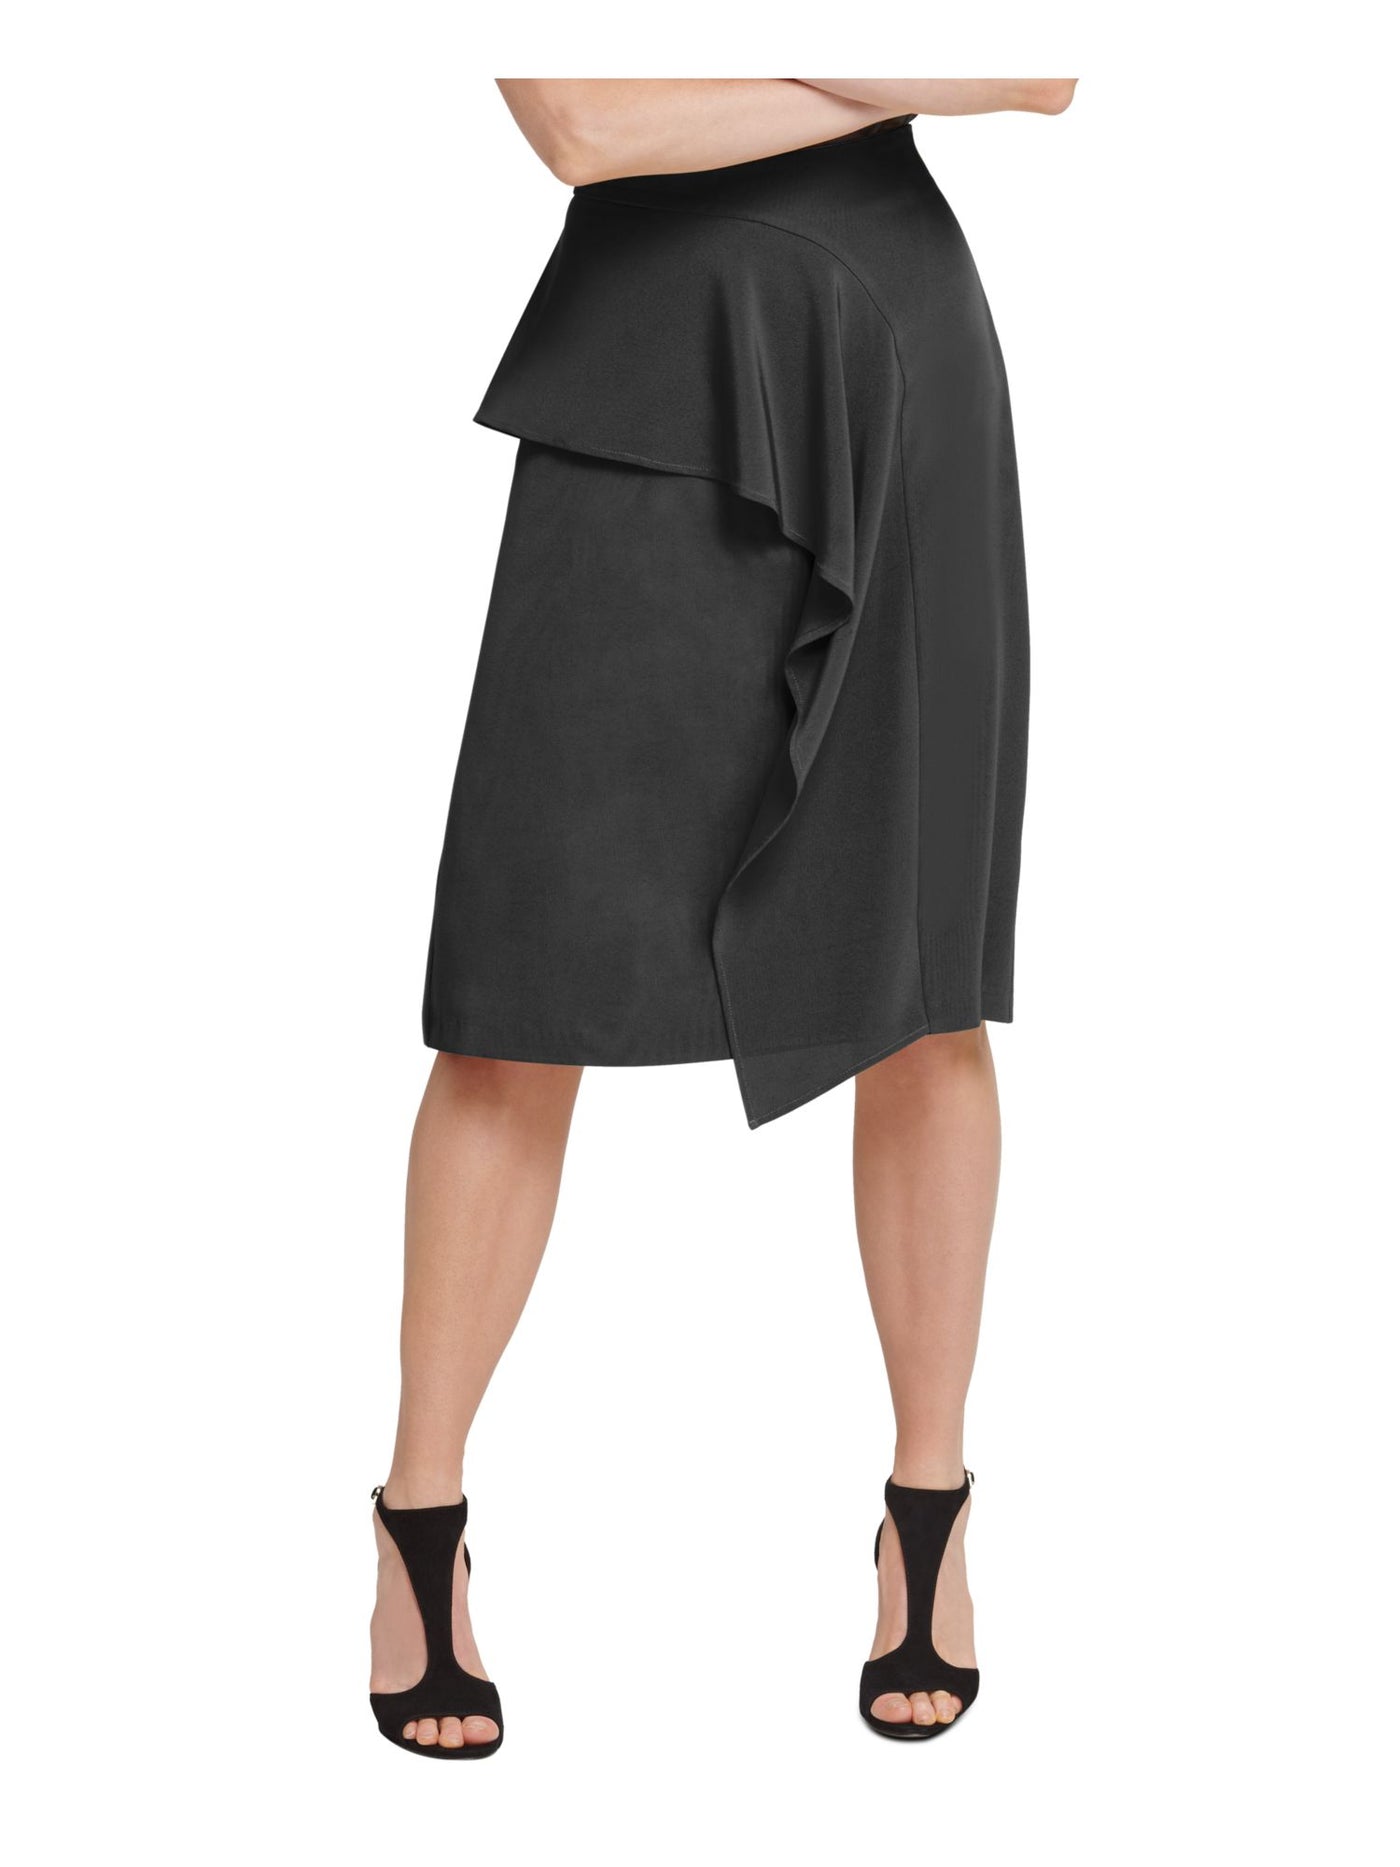 DKNY Womens Black Knee Length Ruffled Skirt 2